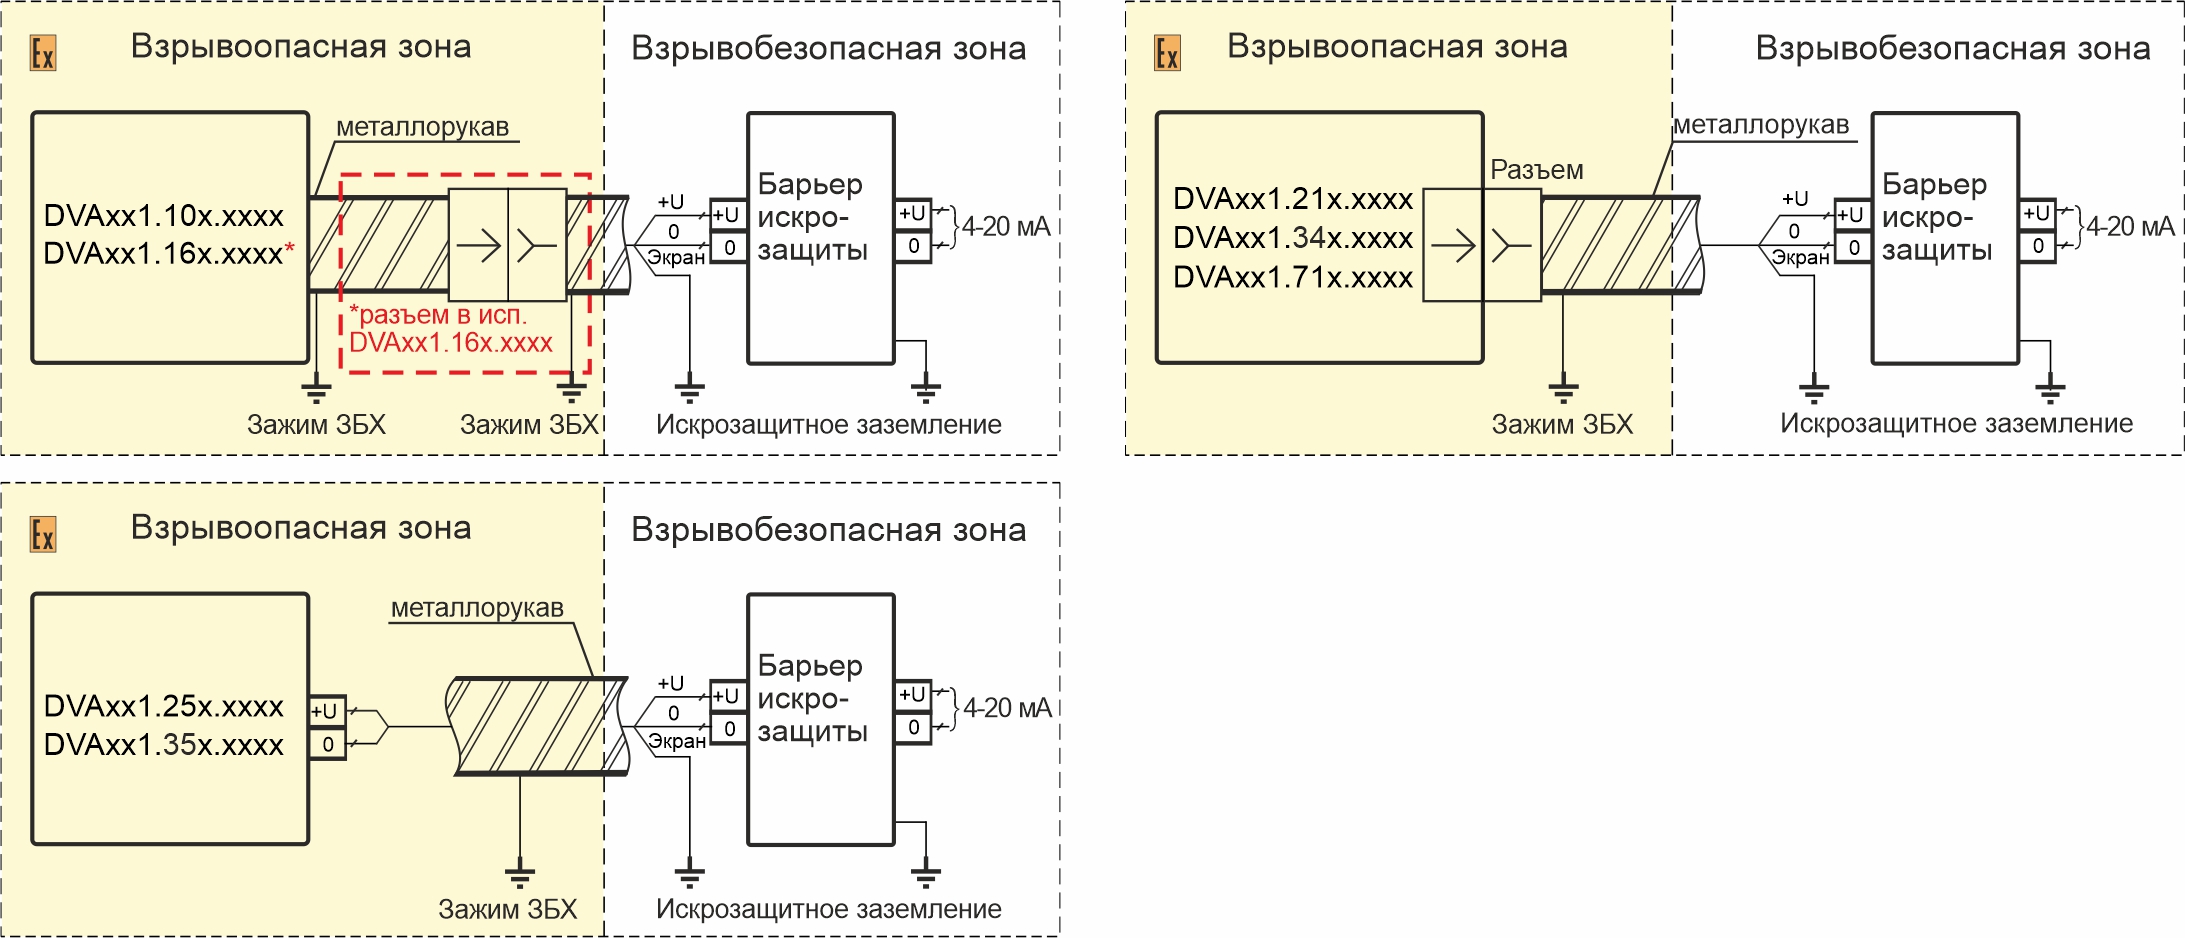 Схемы подключения вибропреобразователей DVA111.XXX